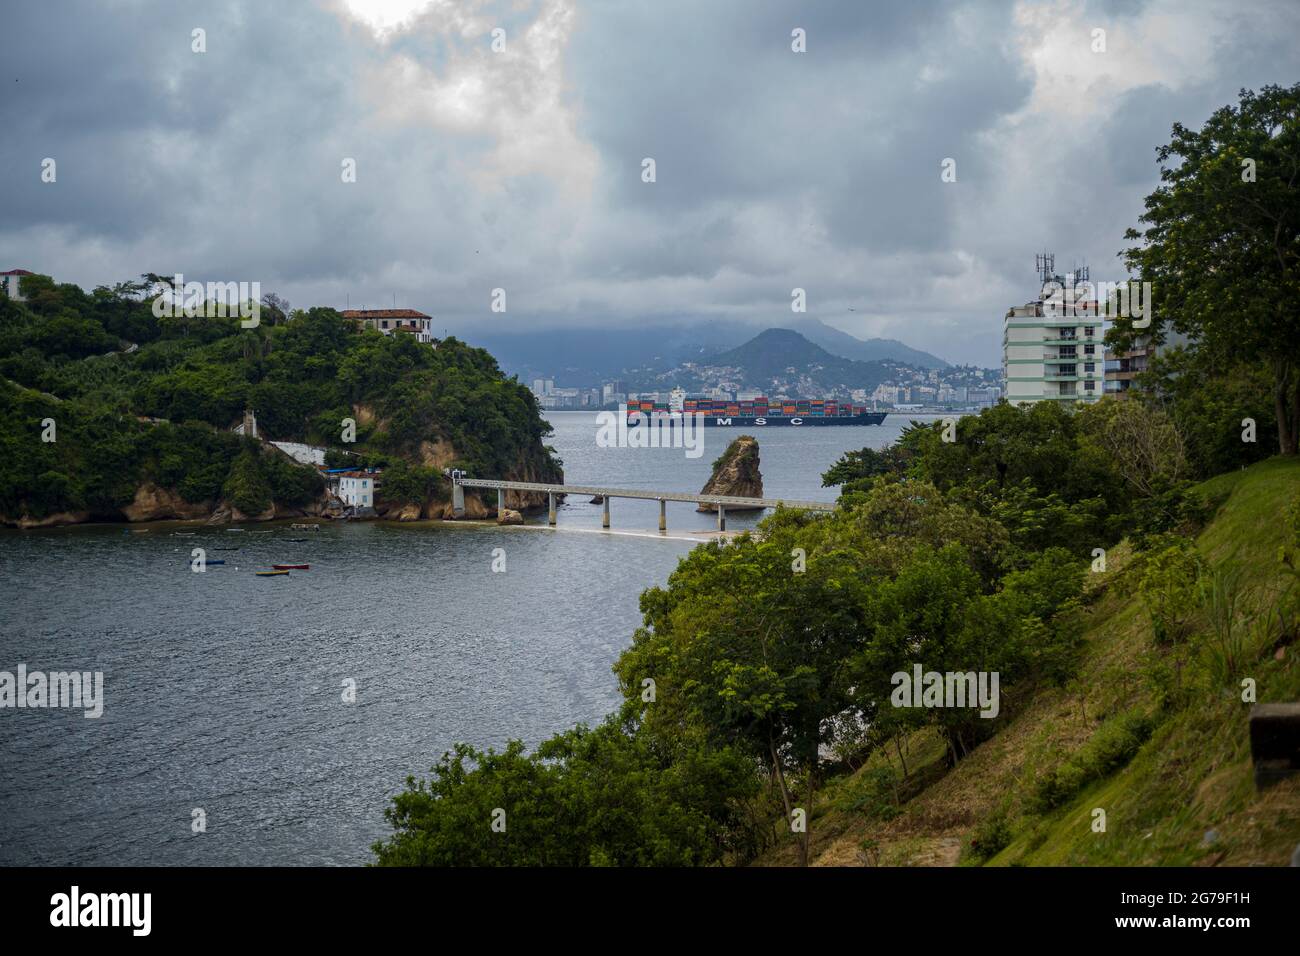 La vue de Ponte da Boa Viagem, Nitreói, Etat de Rio de Janeiro, Brésil. Green Ilha da boa Viagem île privée dans la baie reliée à la terre principale par le pont étroit et le sable jaune sous bleu ciel nuageux. Montagnes à distance. Banque D'Images